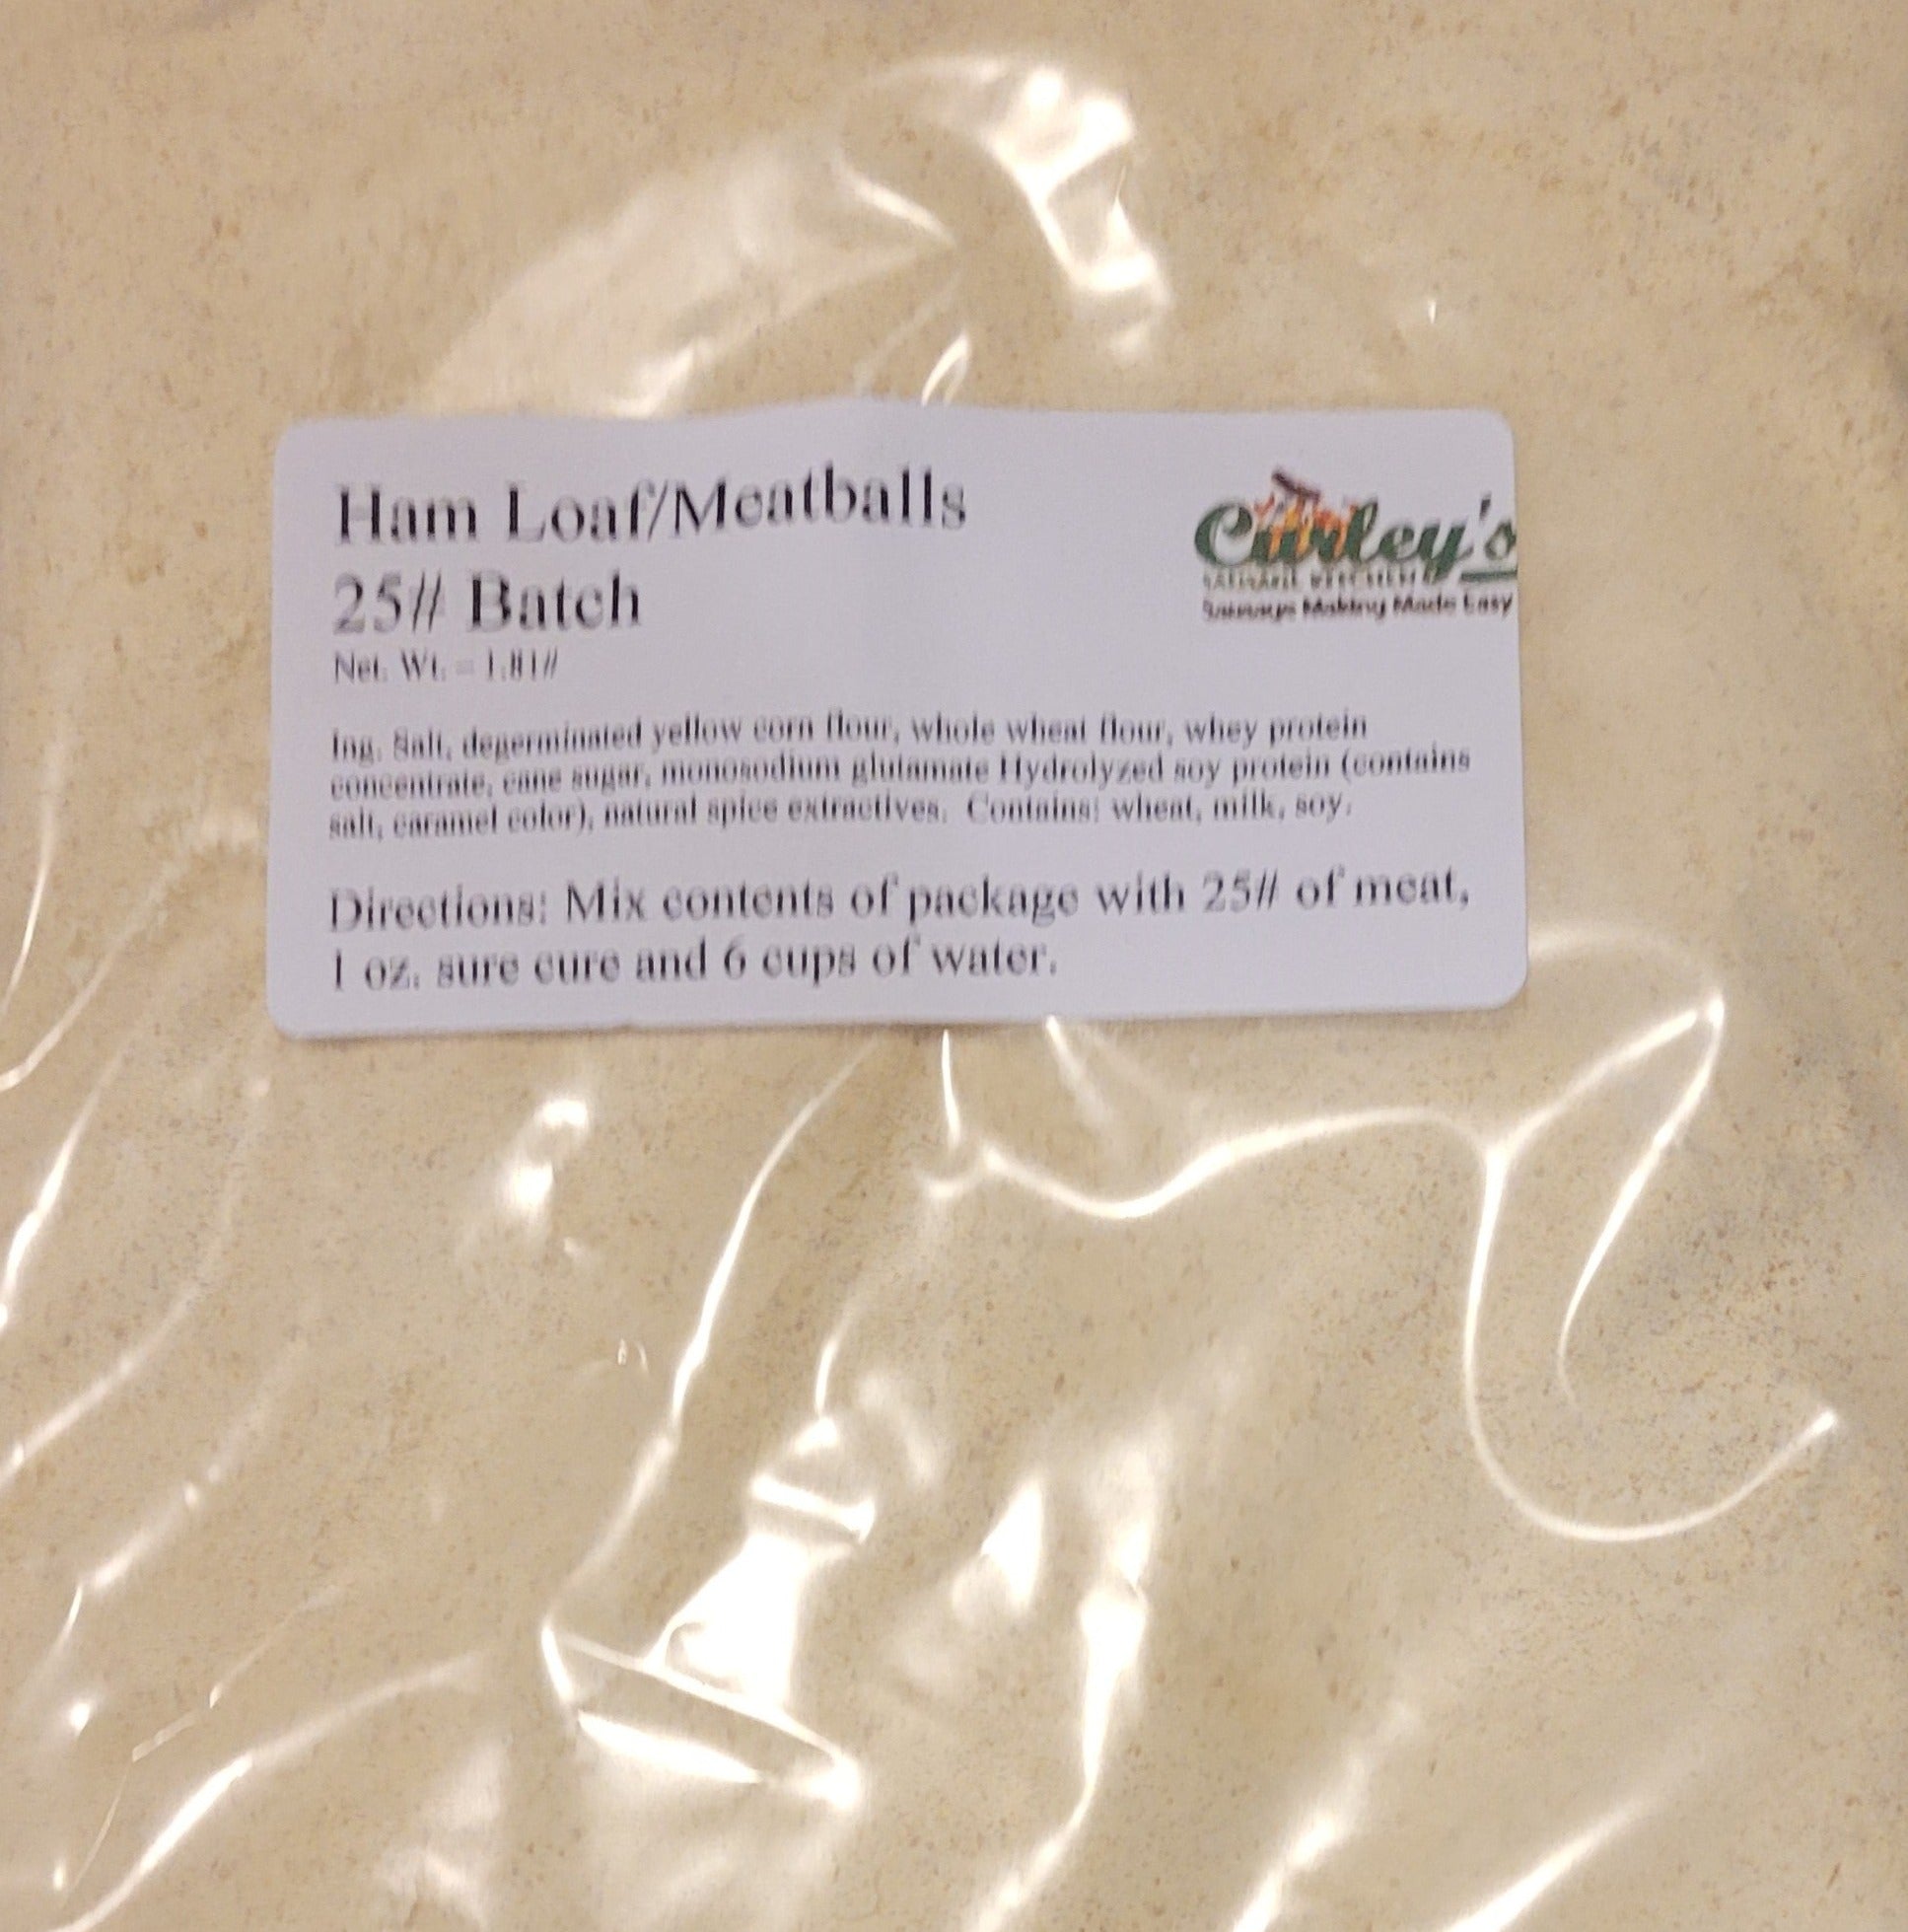 Ham Loaf Meatballs